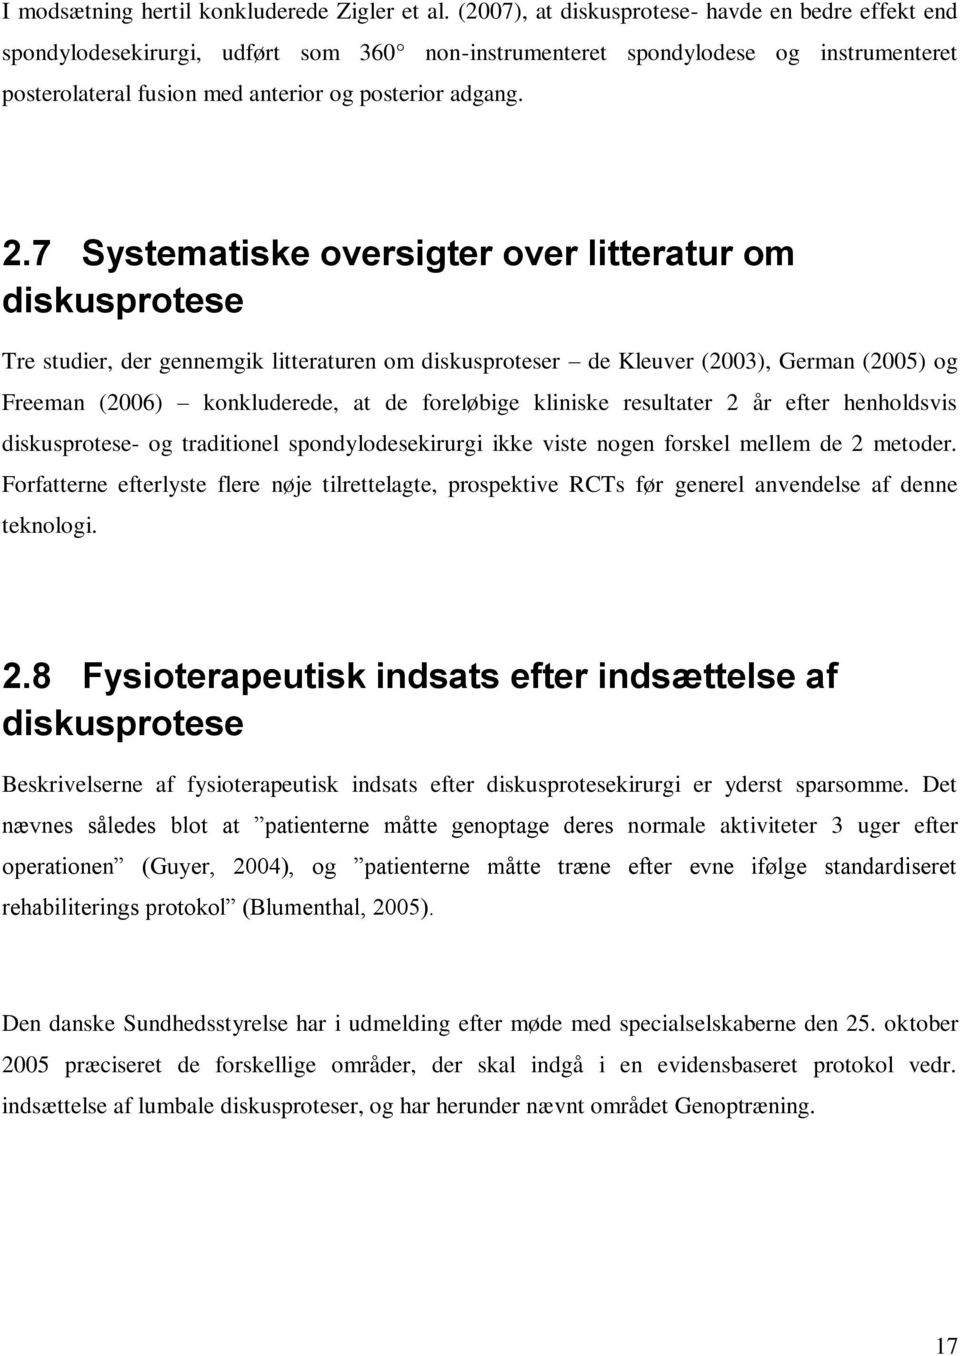 7 Systematiske oversigter over litteratur om diskusprotese Tre studier, der gennemgik litteraturen om diskusproteser de Kleuver (2003), German (2005) og Freeman (2006) konkluderede, at de foreløbige